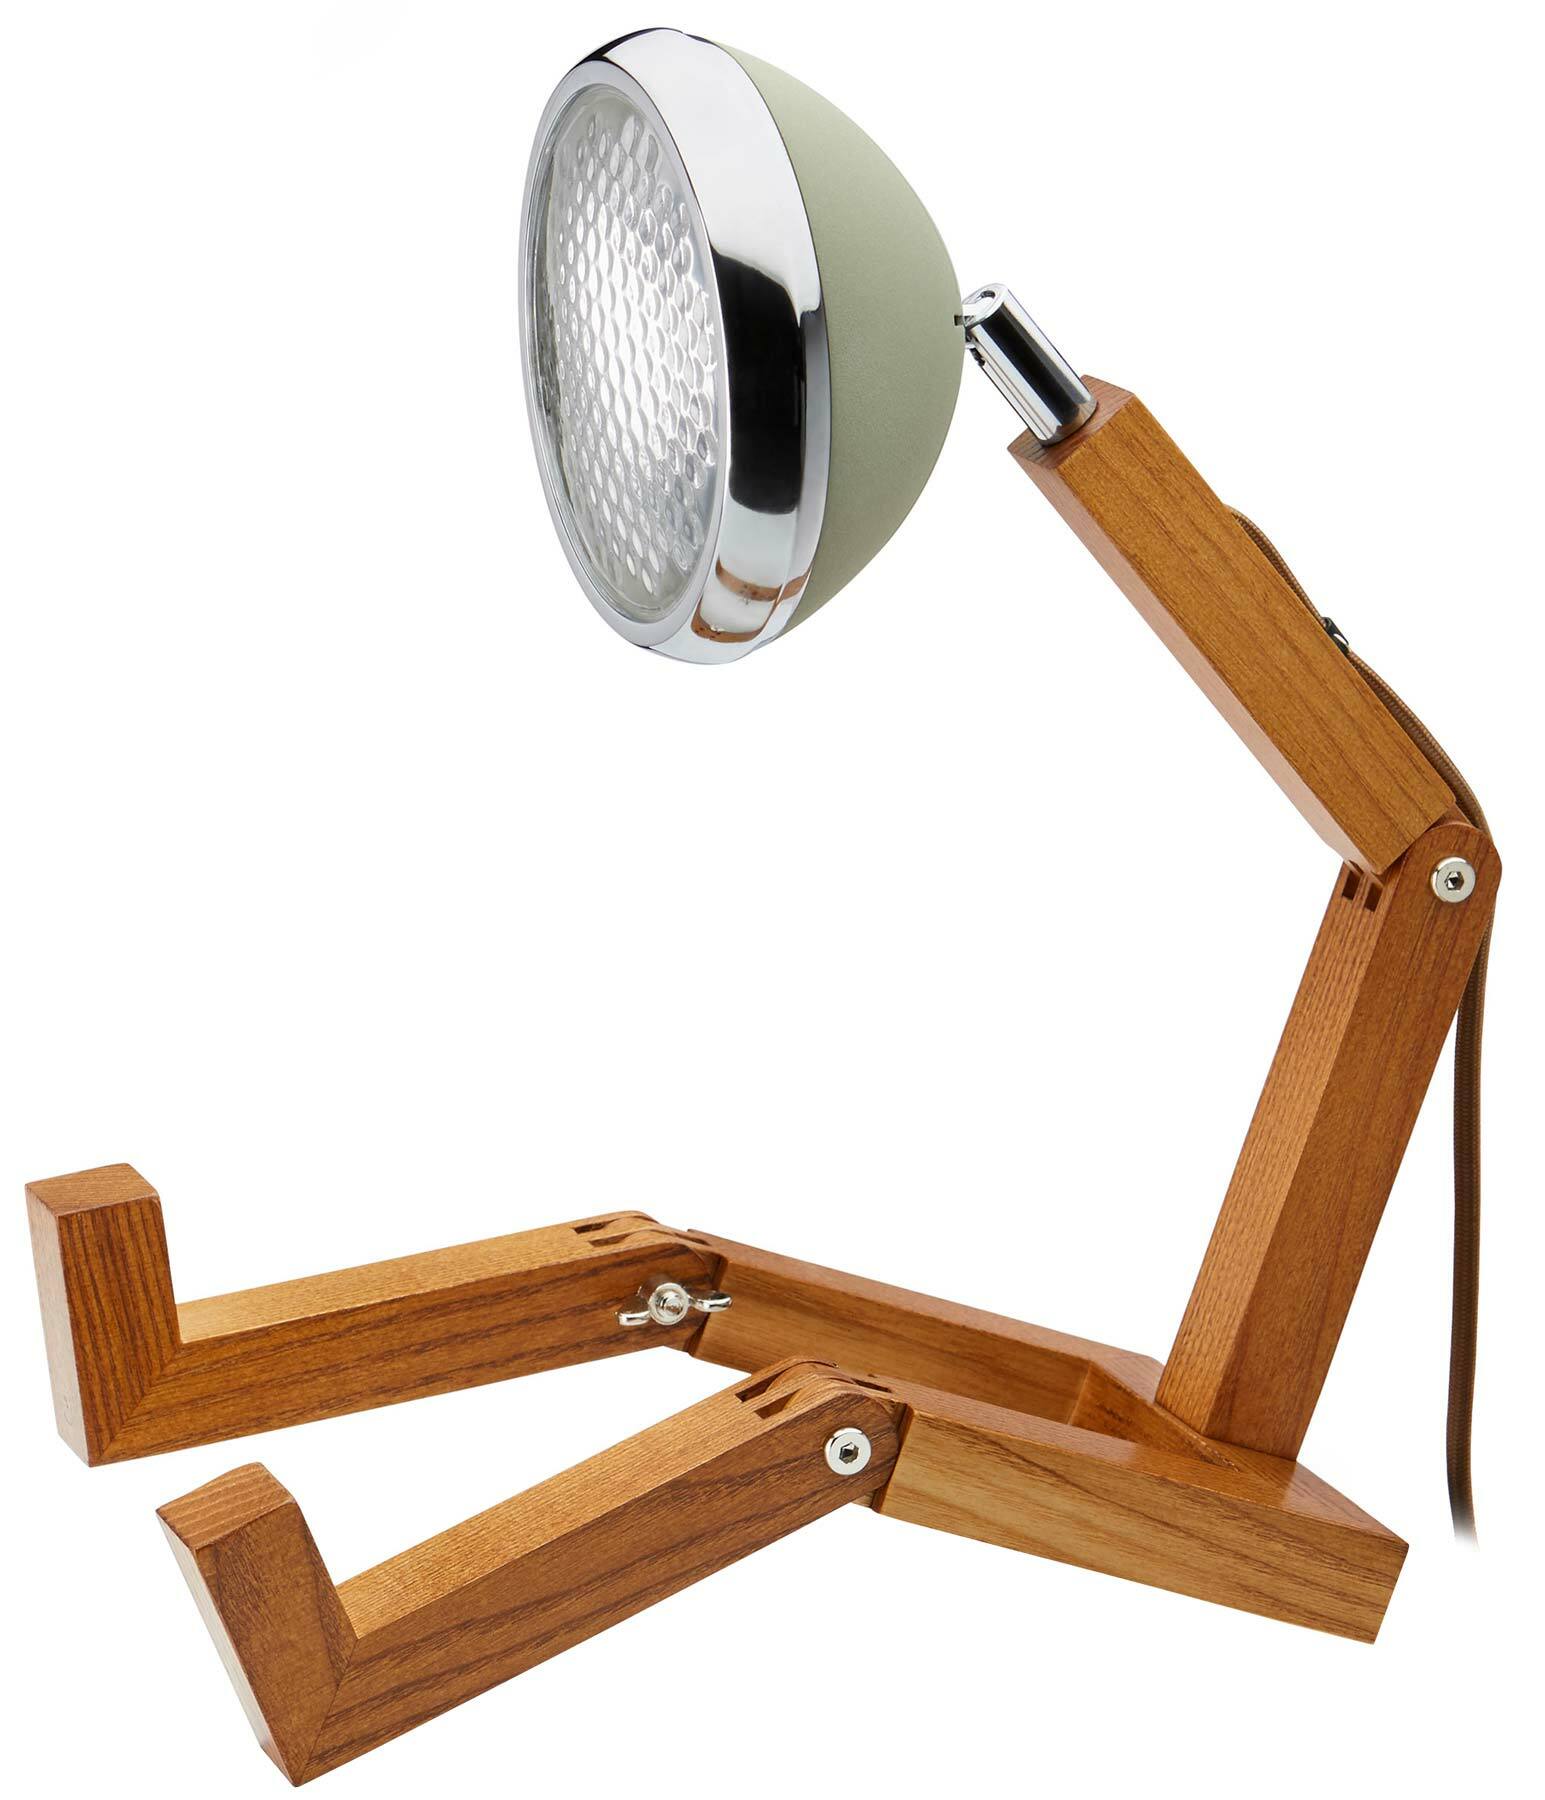 Piffany Copenhagen: Flexible LED-Tischlampe "Mr. Wattson", olivfarbene Version von Piffany Copenhagen